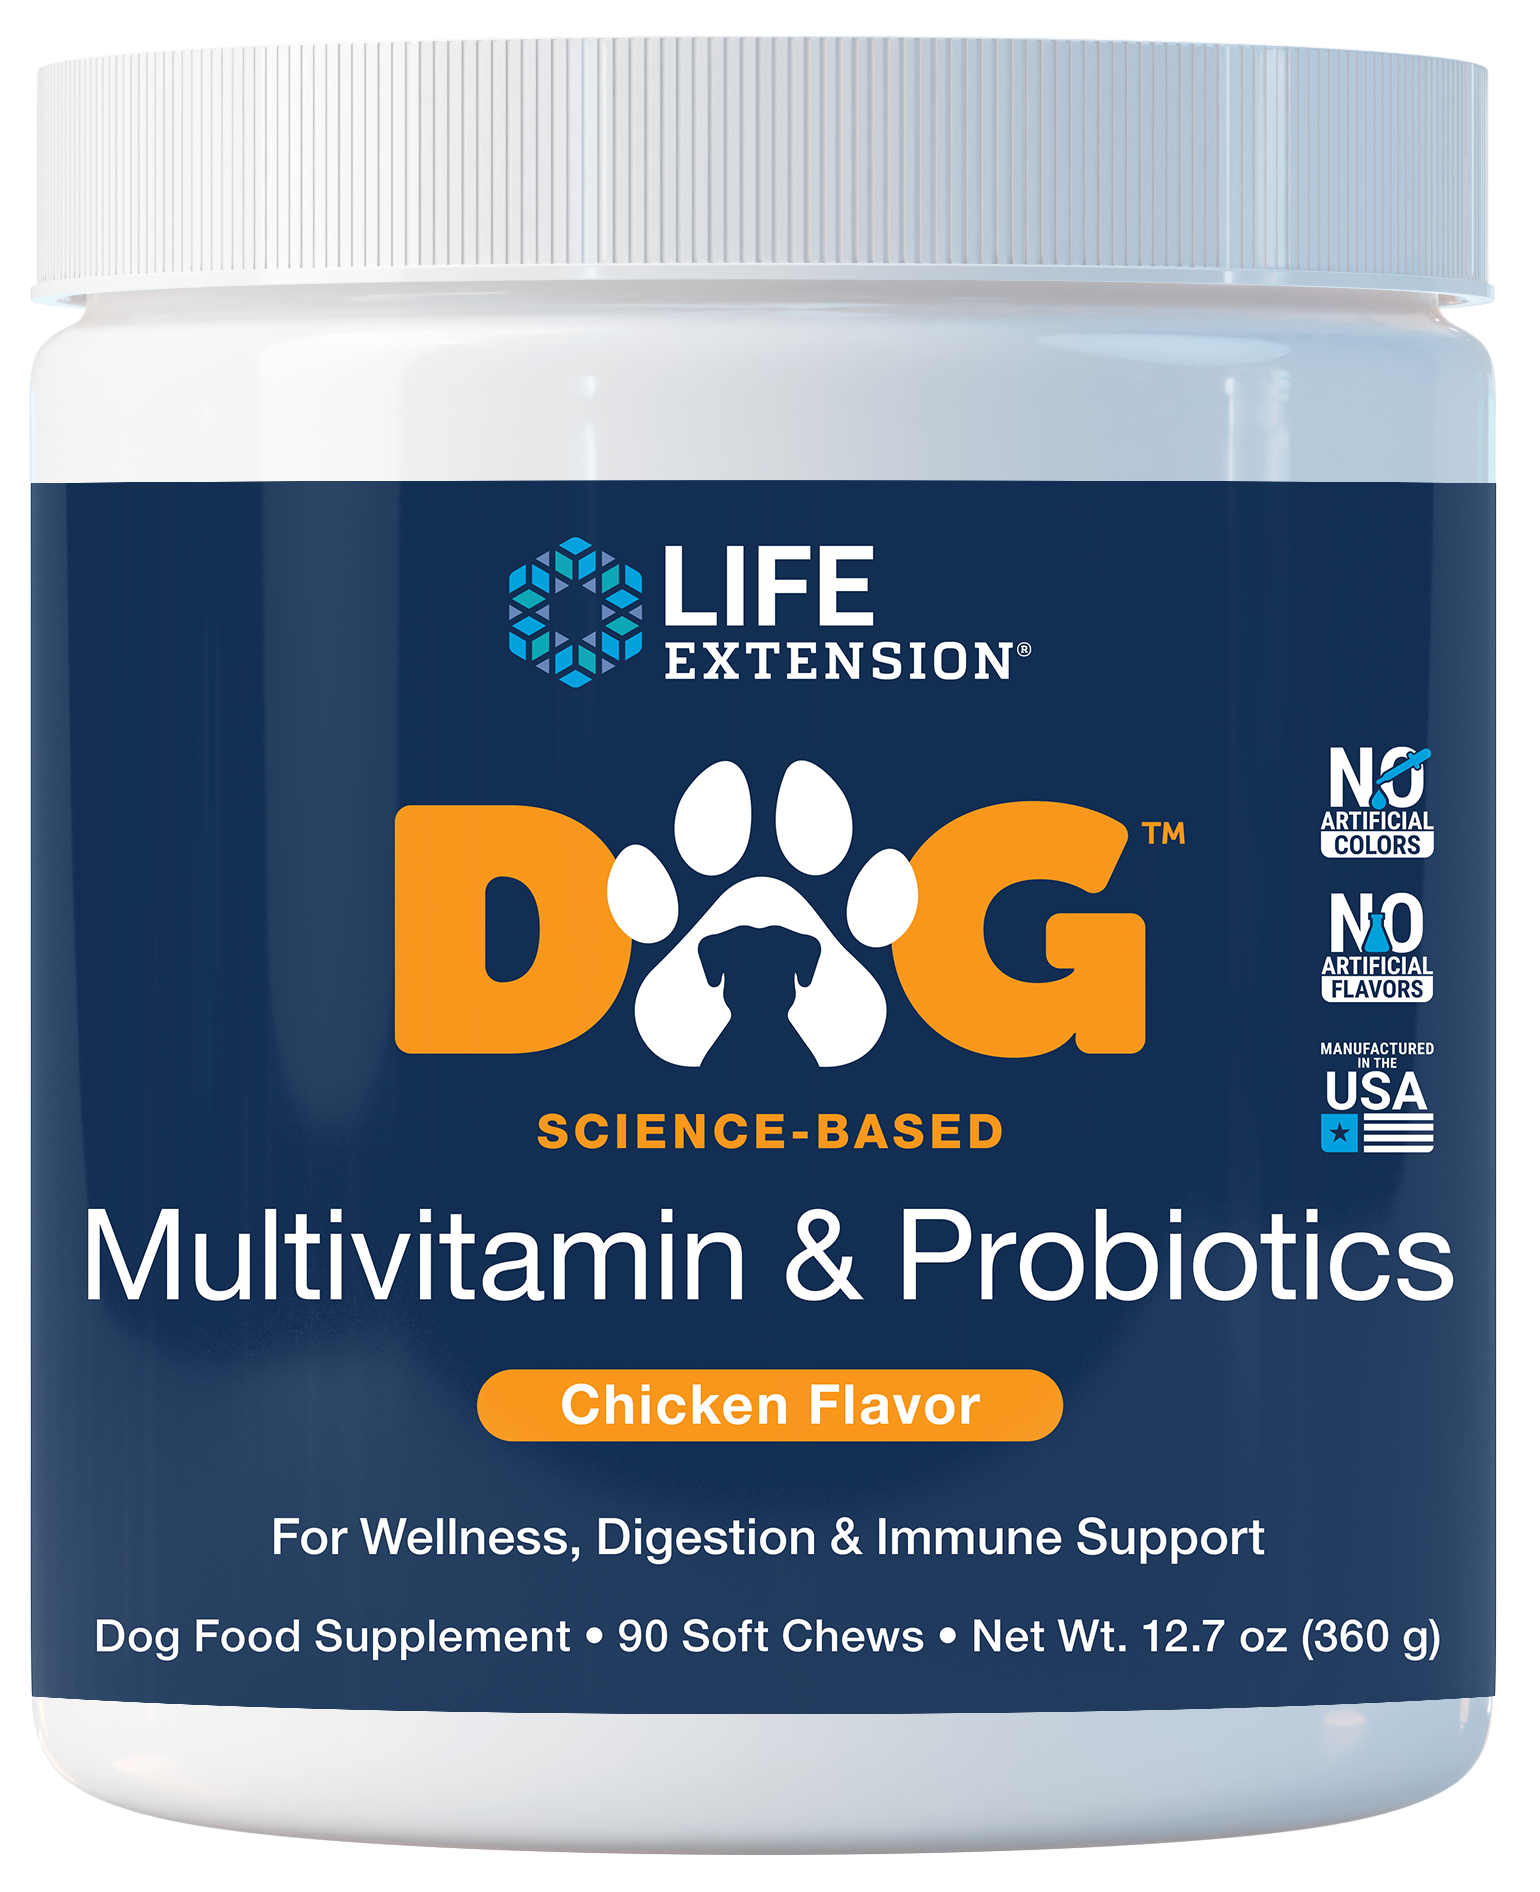 DOG Multivitamin & Probiotics son 90 masticables suaves con sabor a pollo para la salud general, inmunológica y digestiva de los perros.